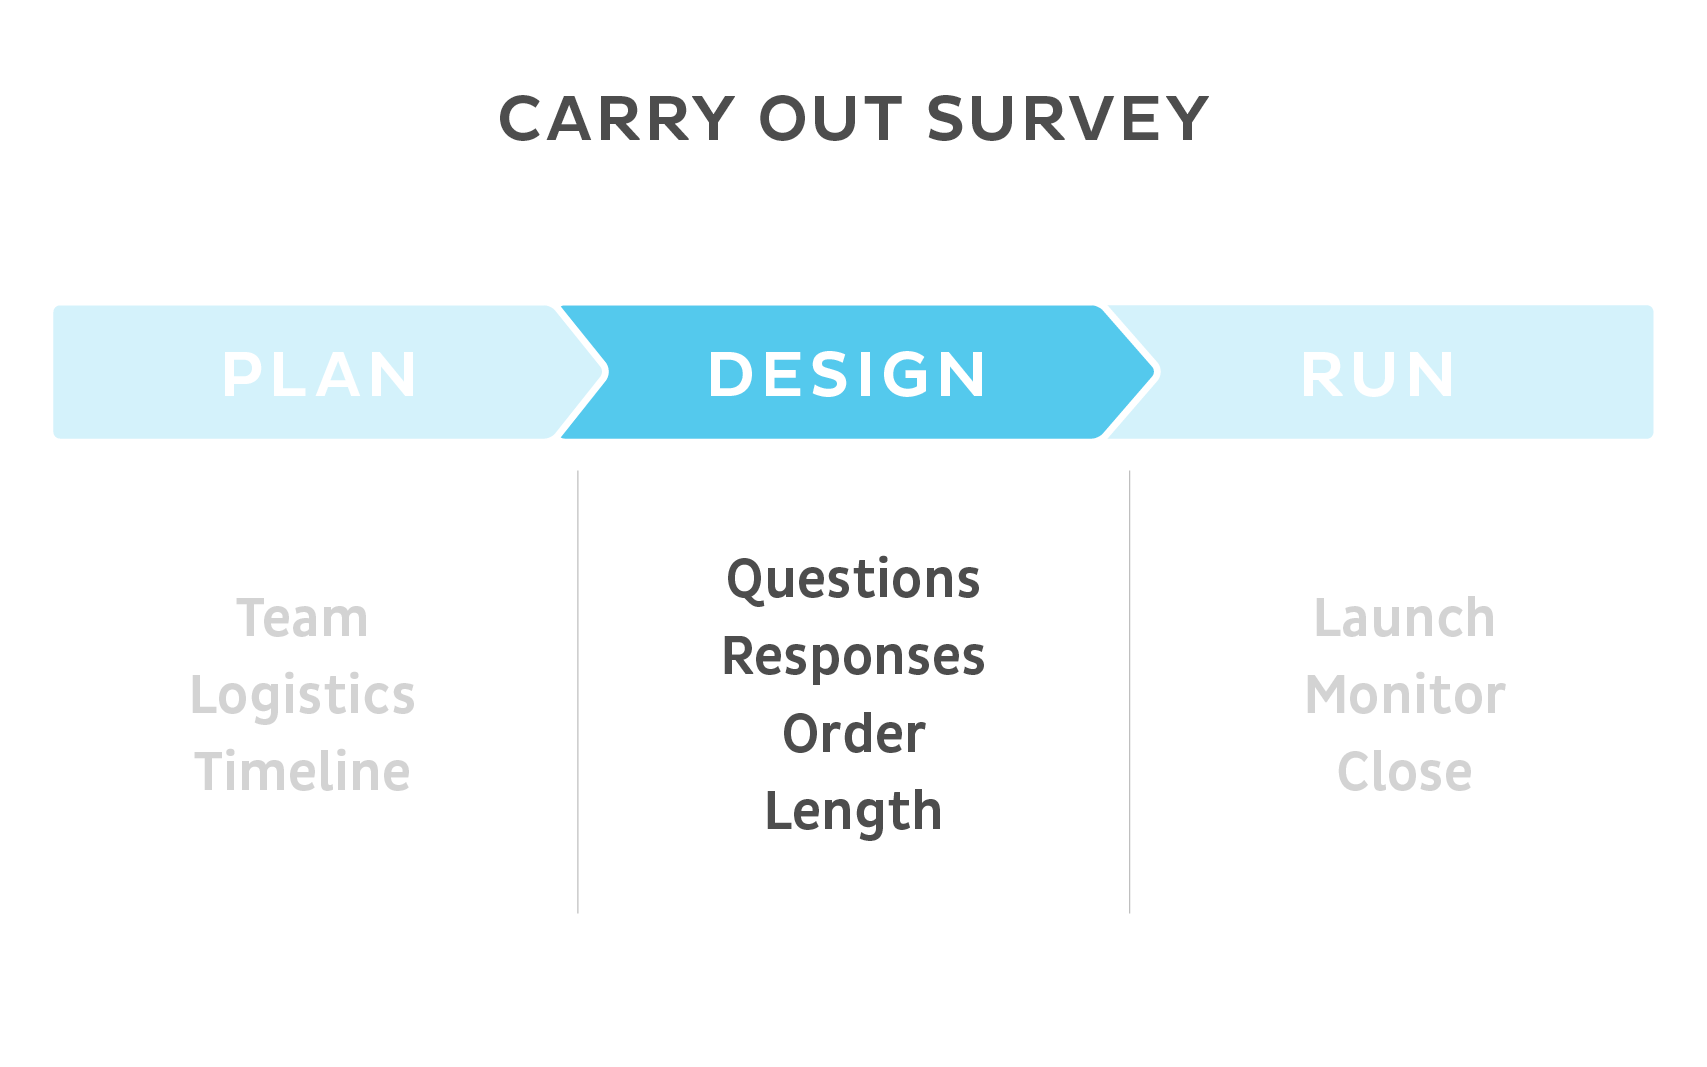 Carry out survey - DESIGN